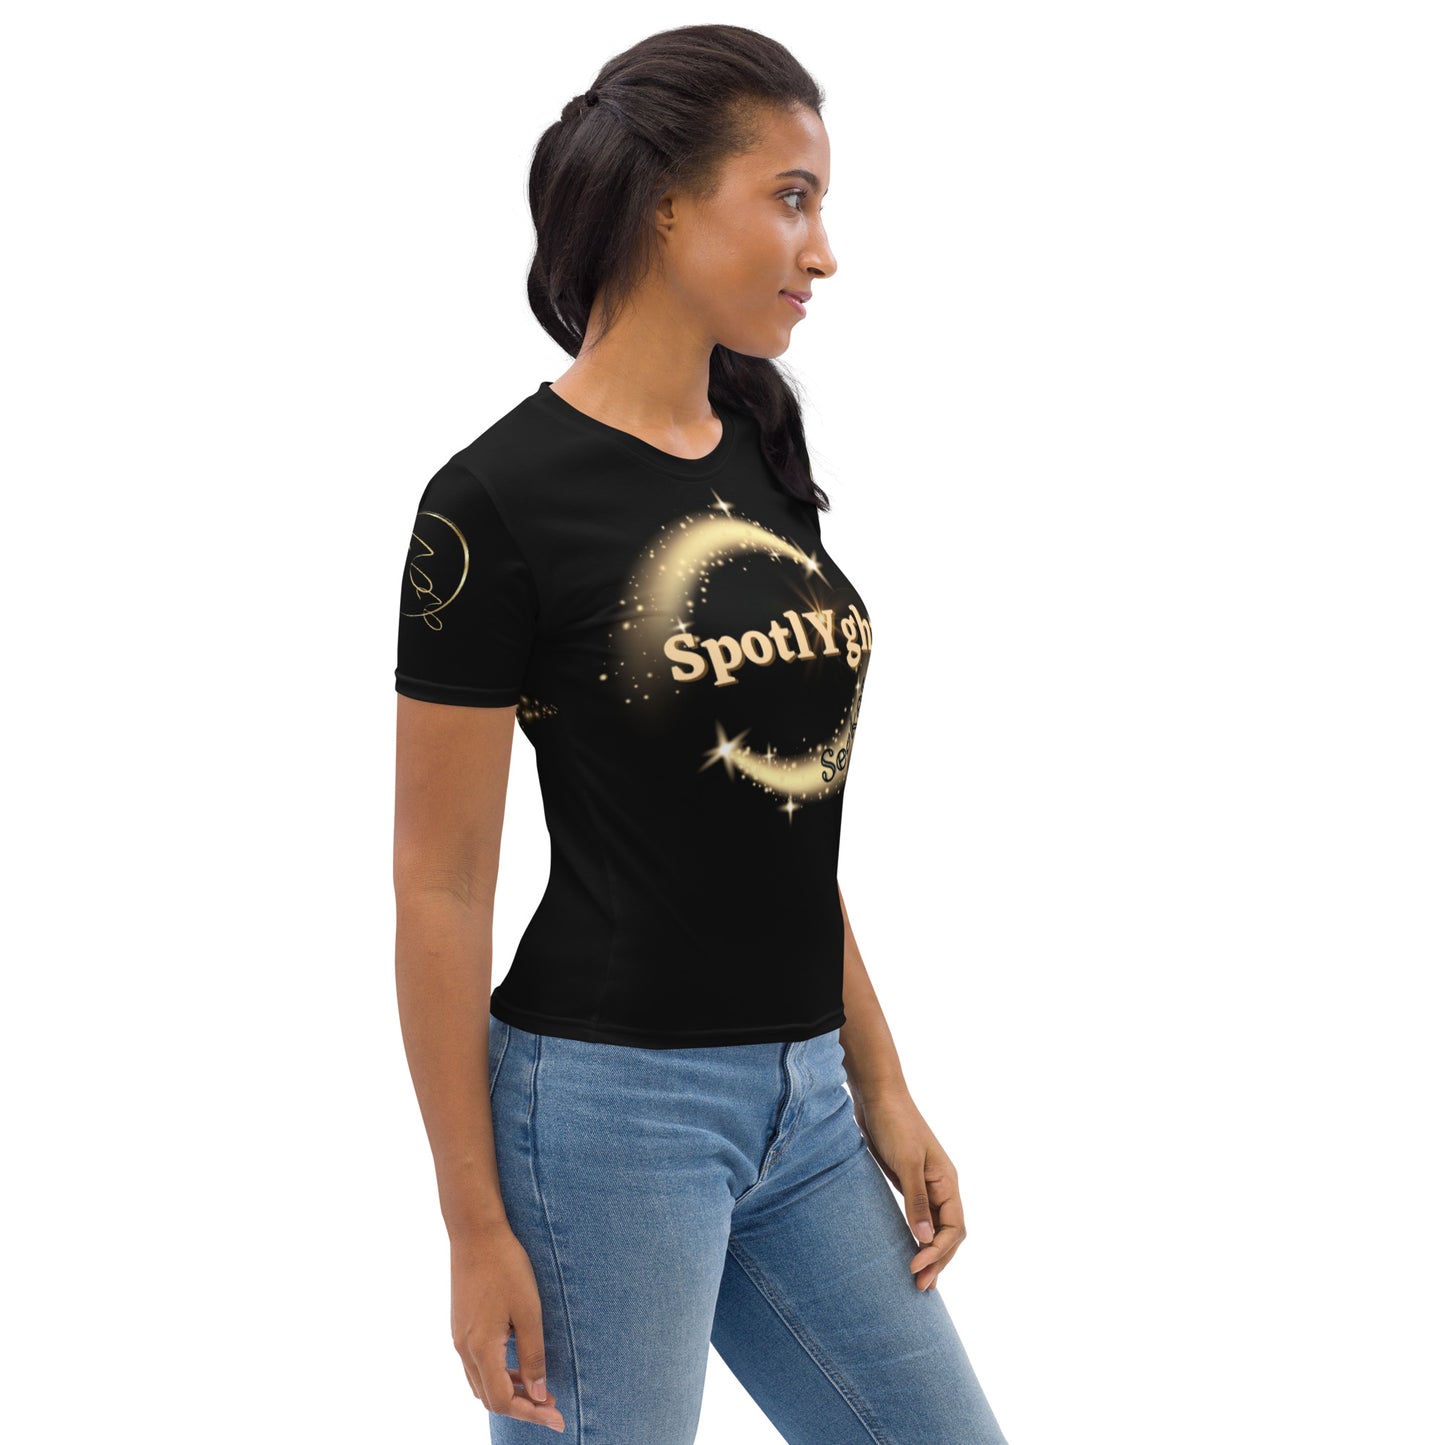 Signature Circle SpotlYght Women's T-Shirt